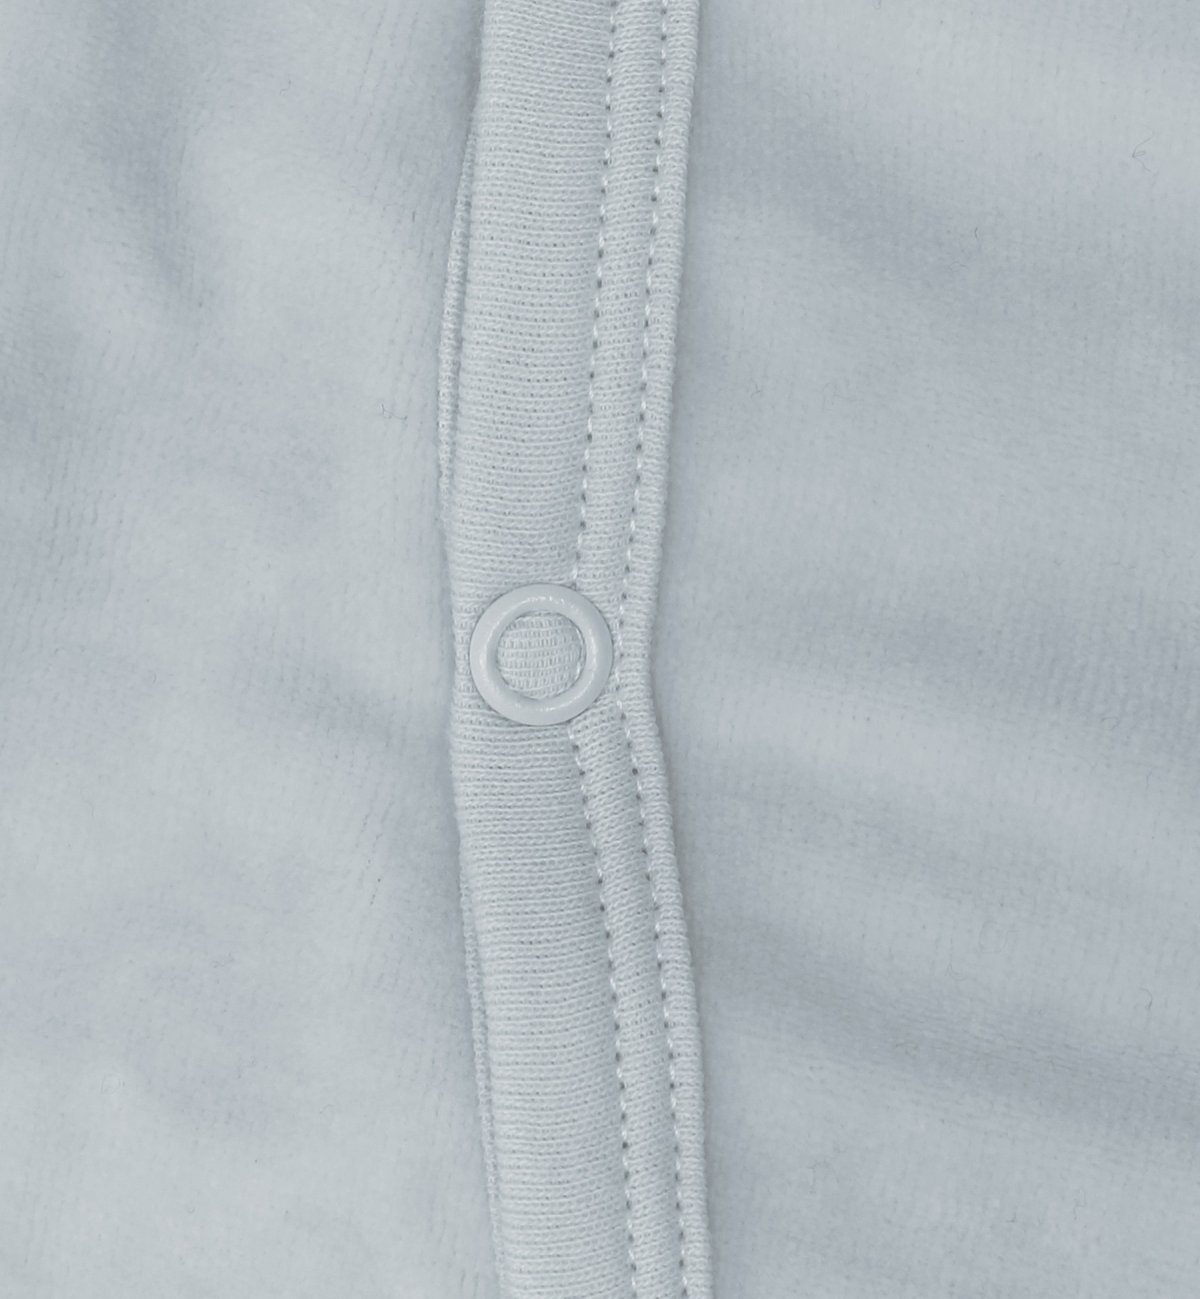 Pyjama bébé en Coton Bio avec motifs plumes blanches